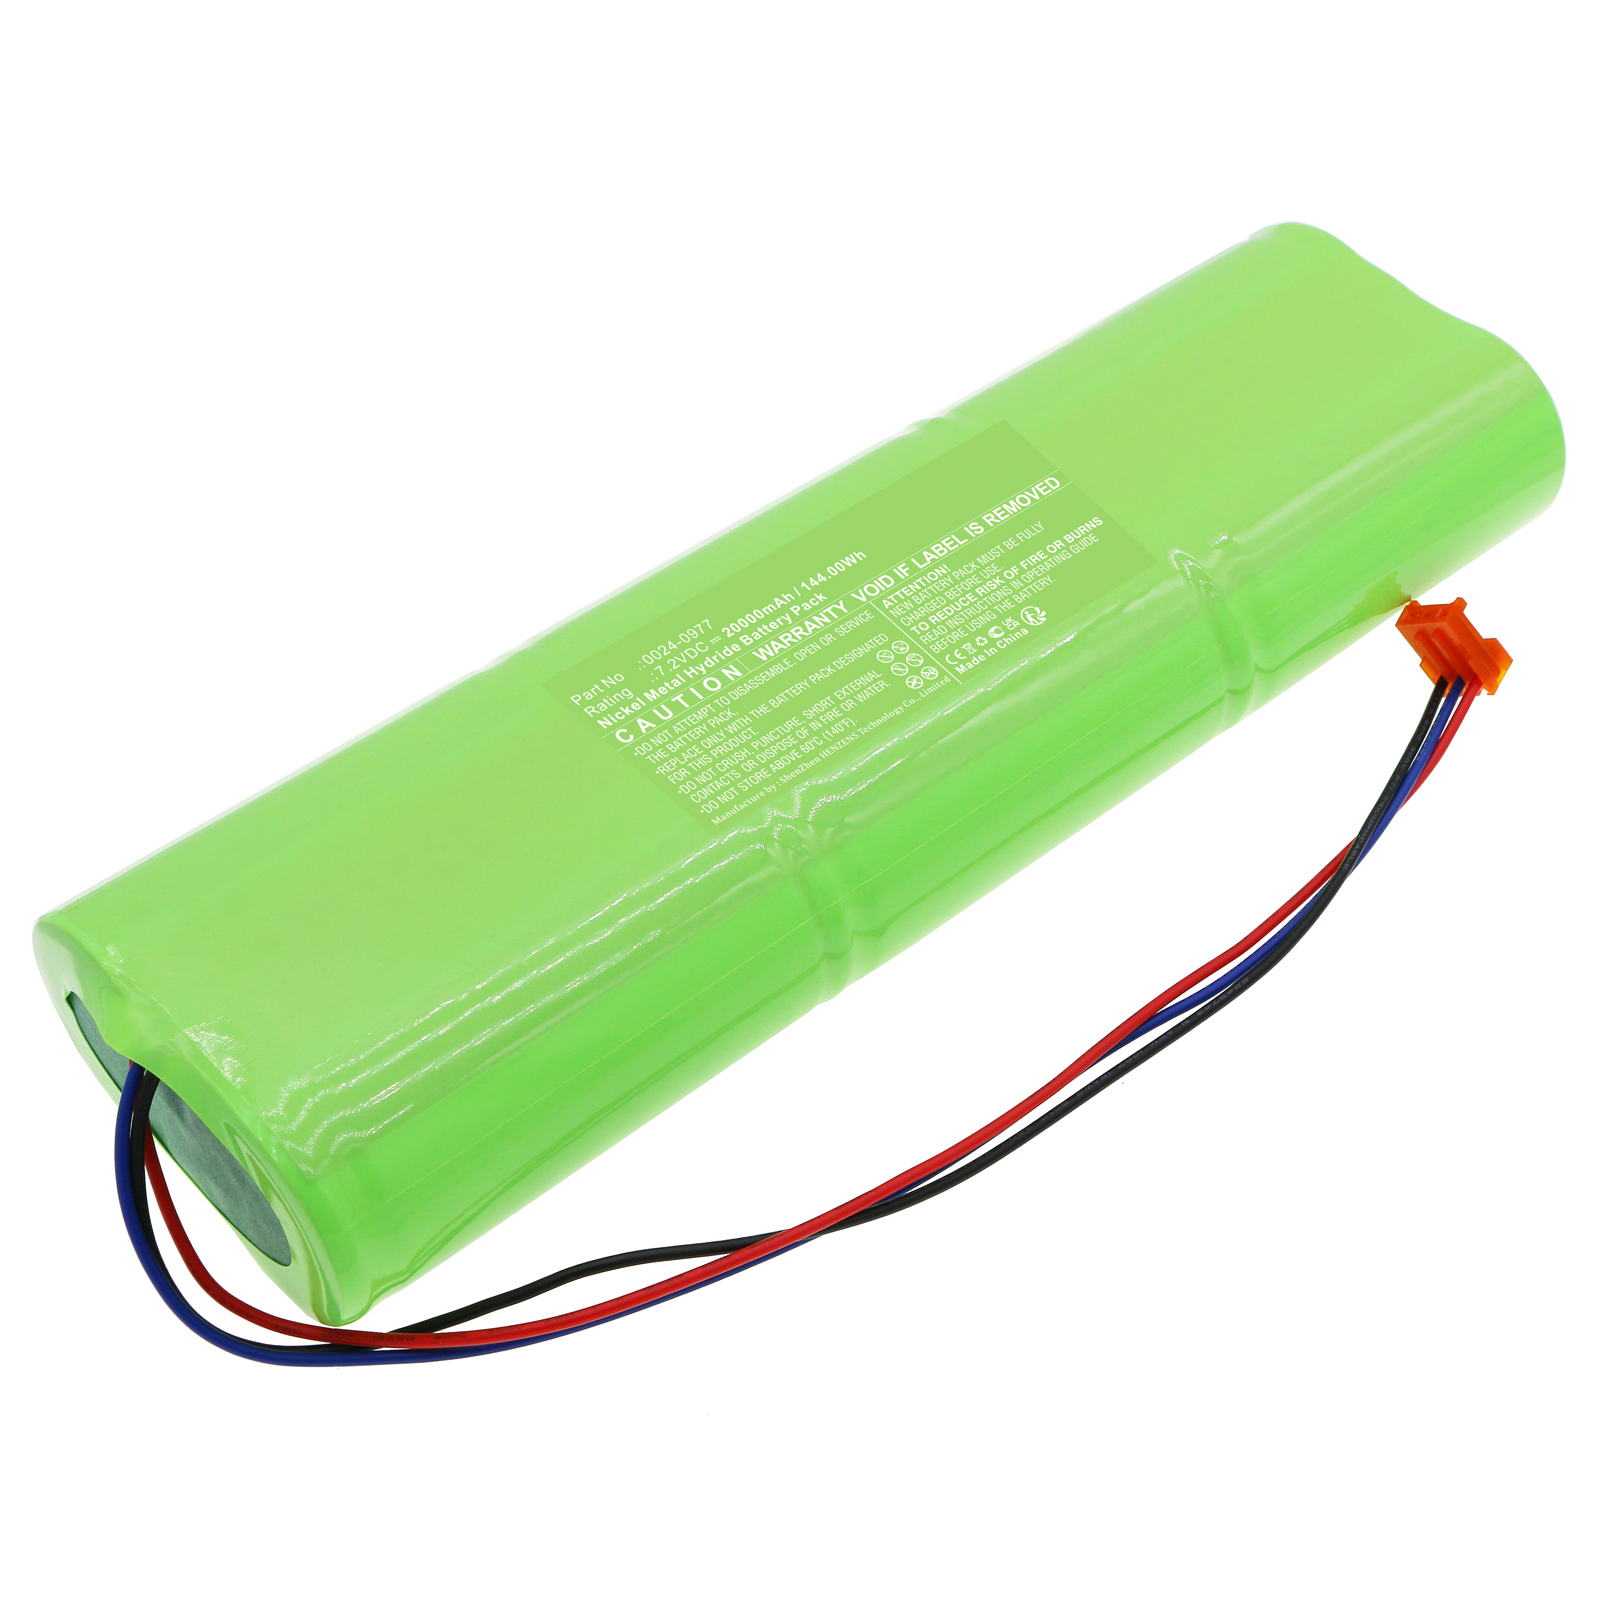 Batteries for BacharachEquipment